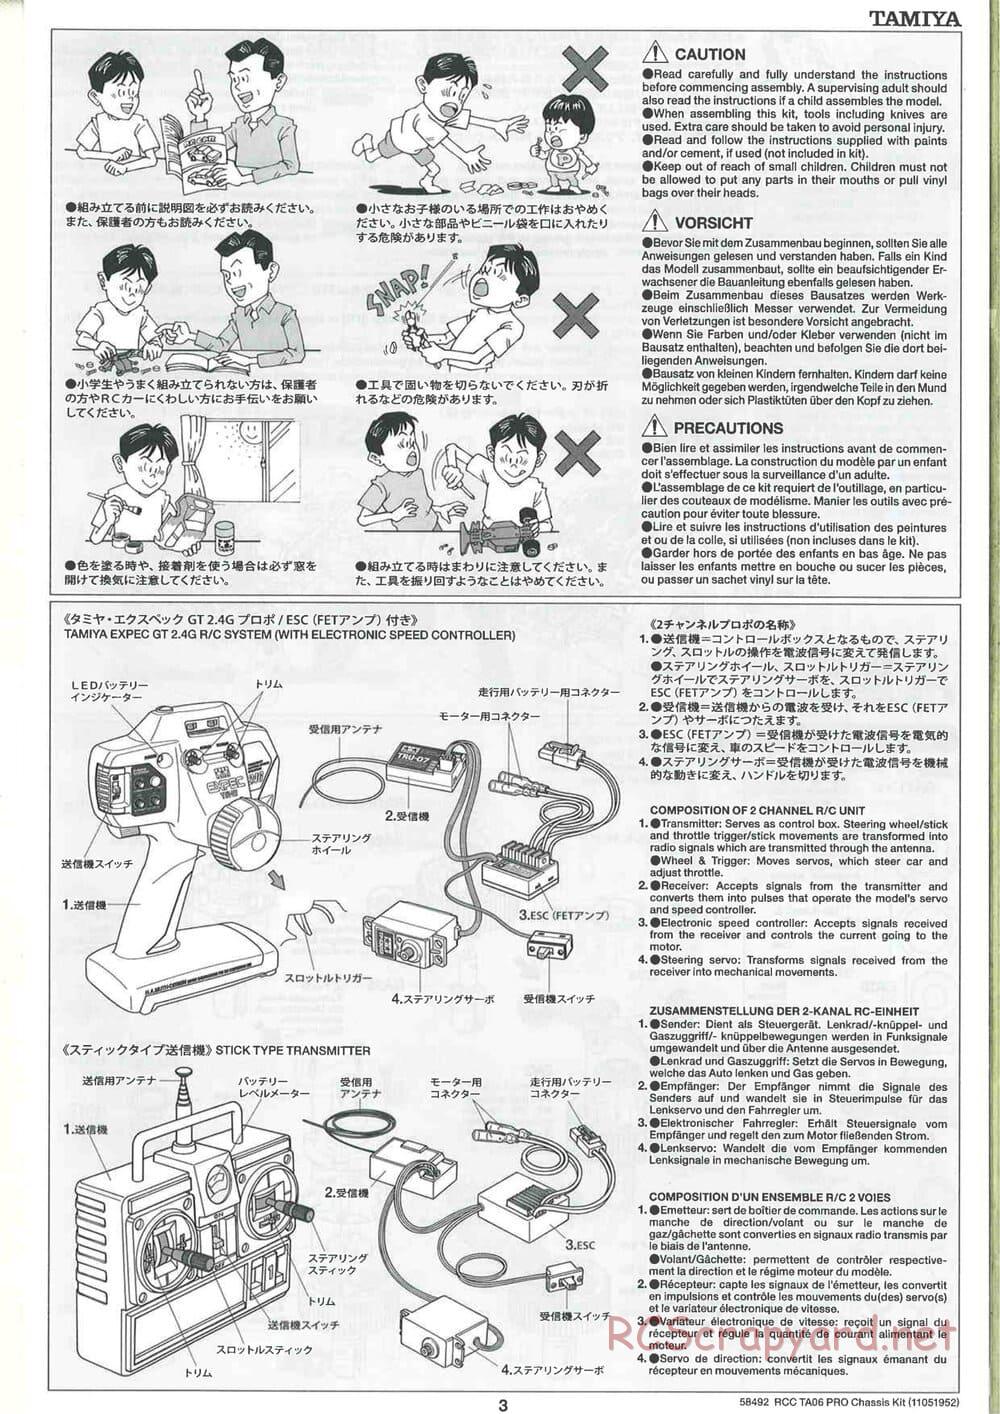 Tamiya - TA06 Pro Chassis - Manual - Page 3